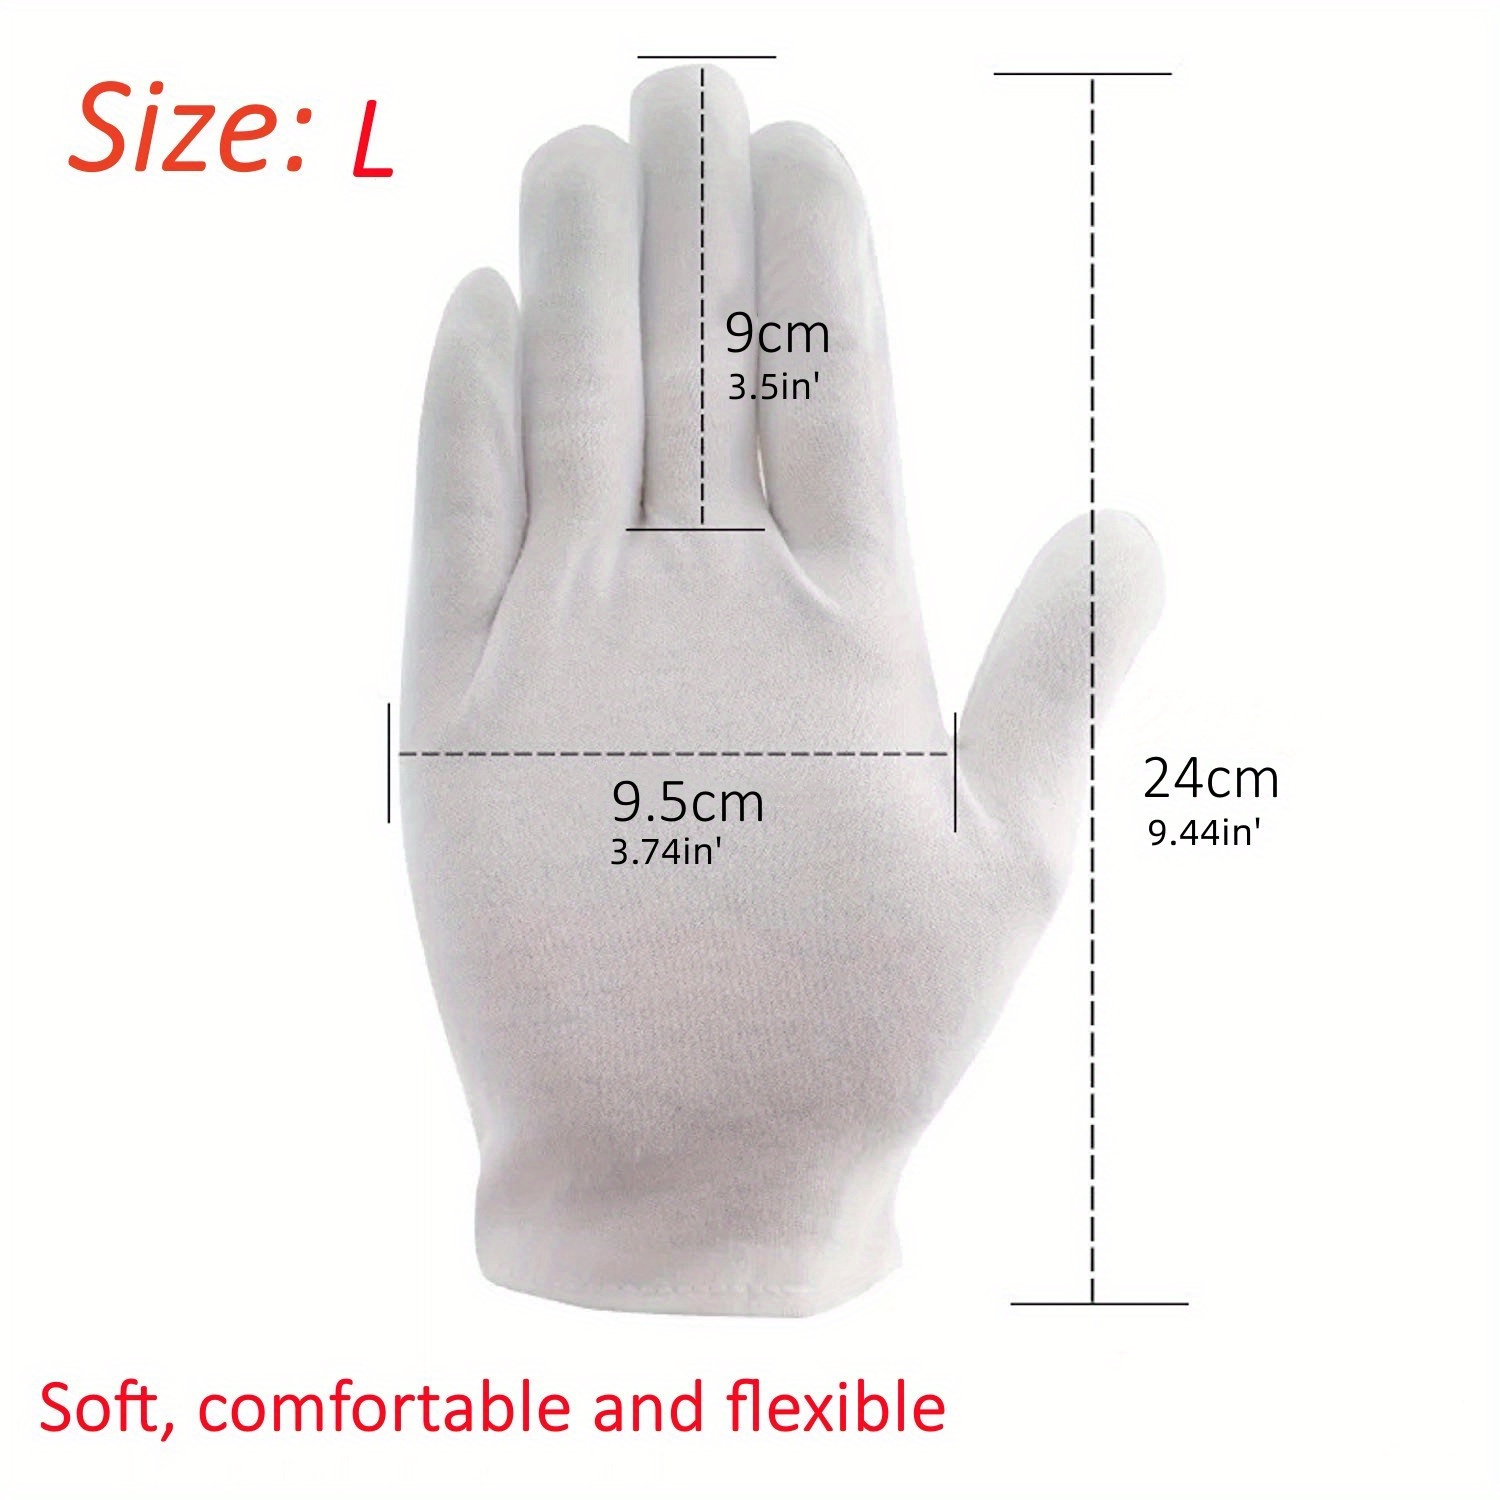 anezus 12 pares de guantes de algodón para manos secas, guantes de algodón  blanco, guantes de